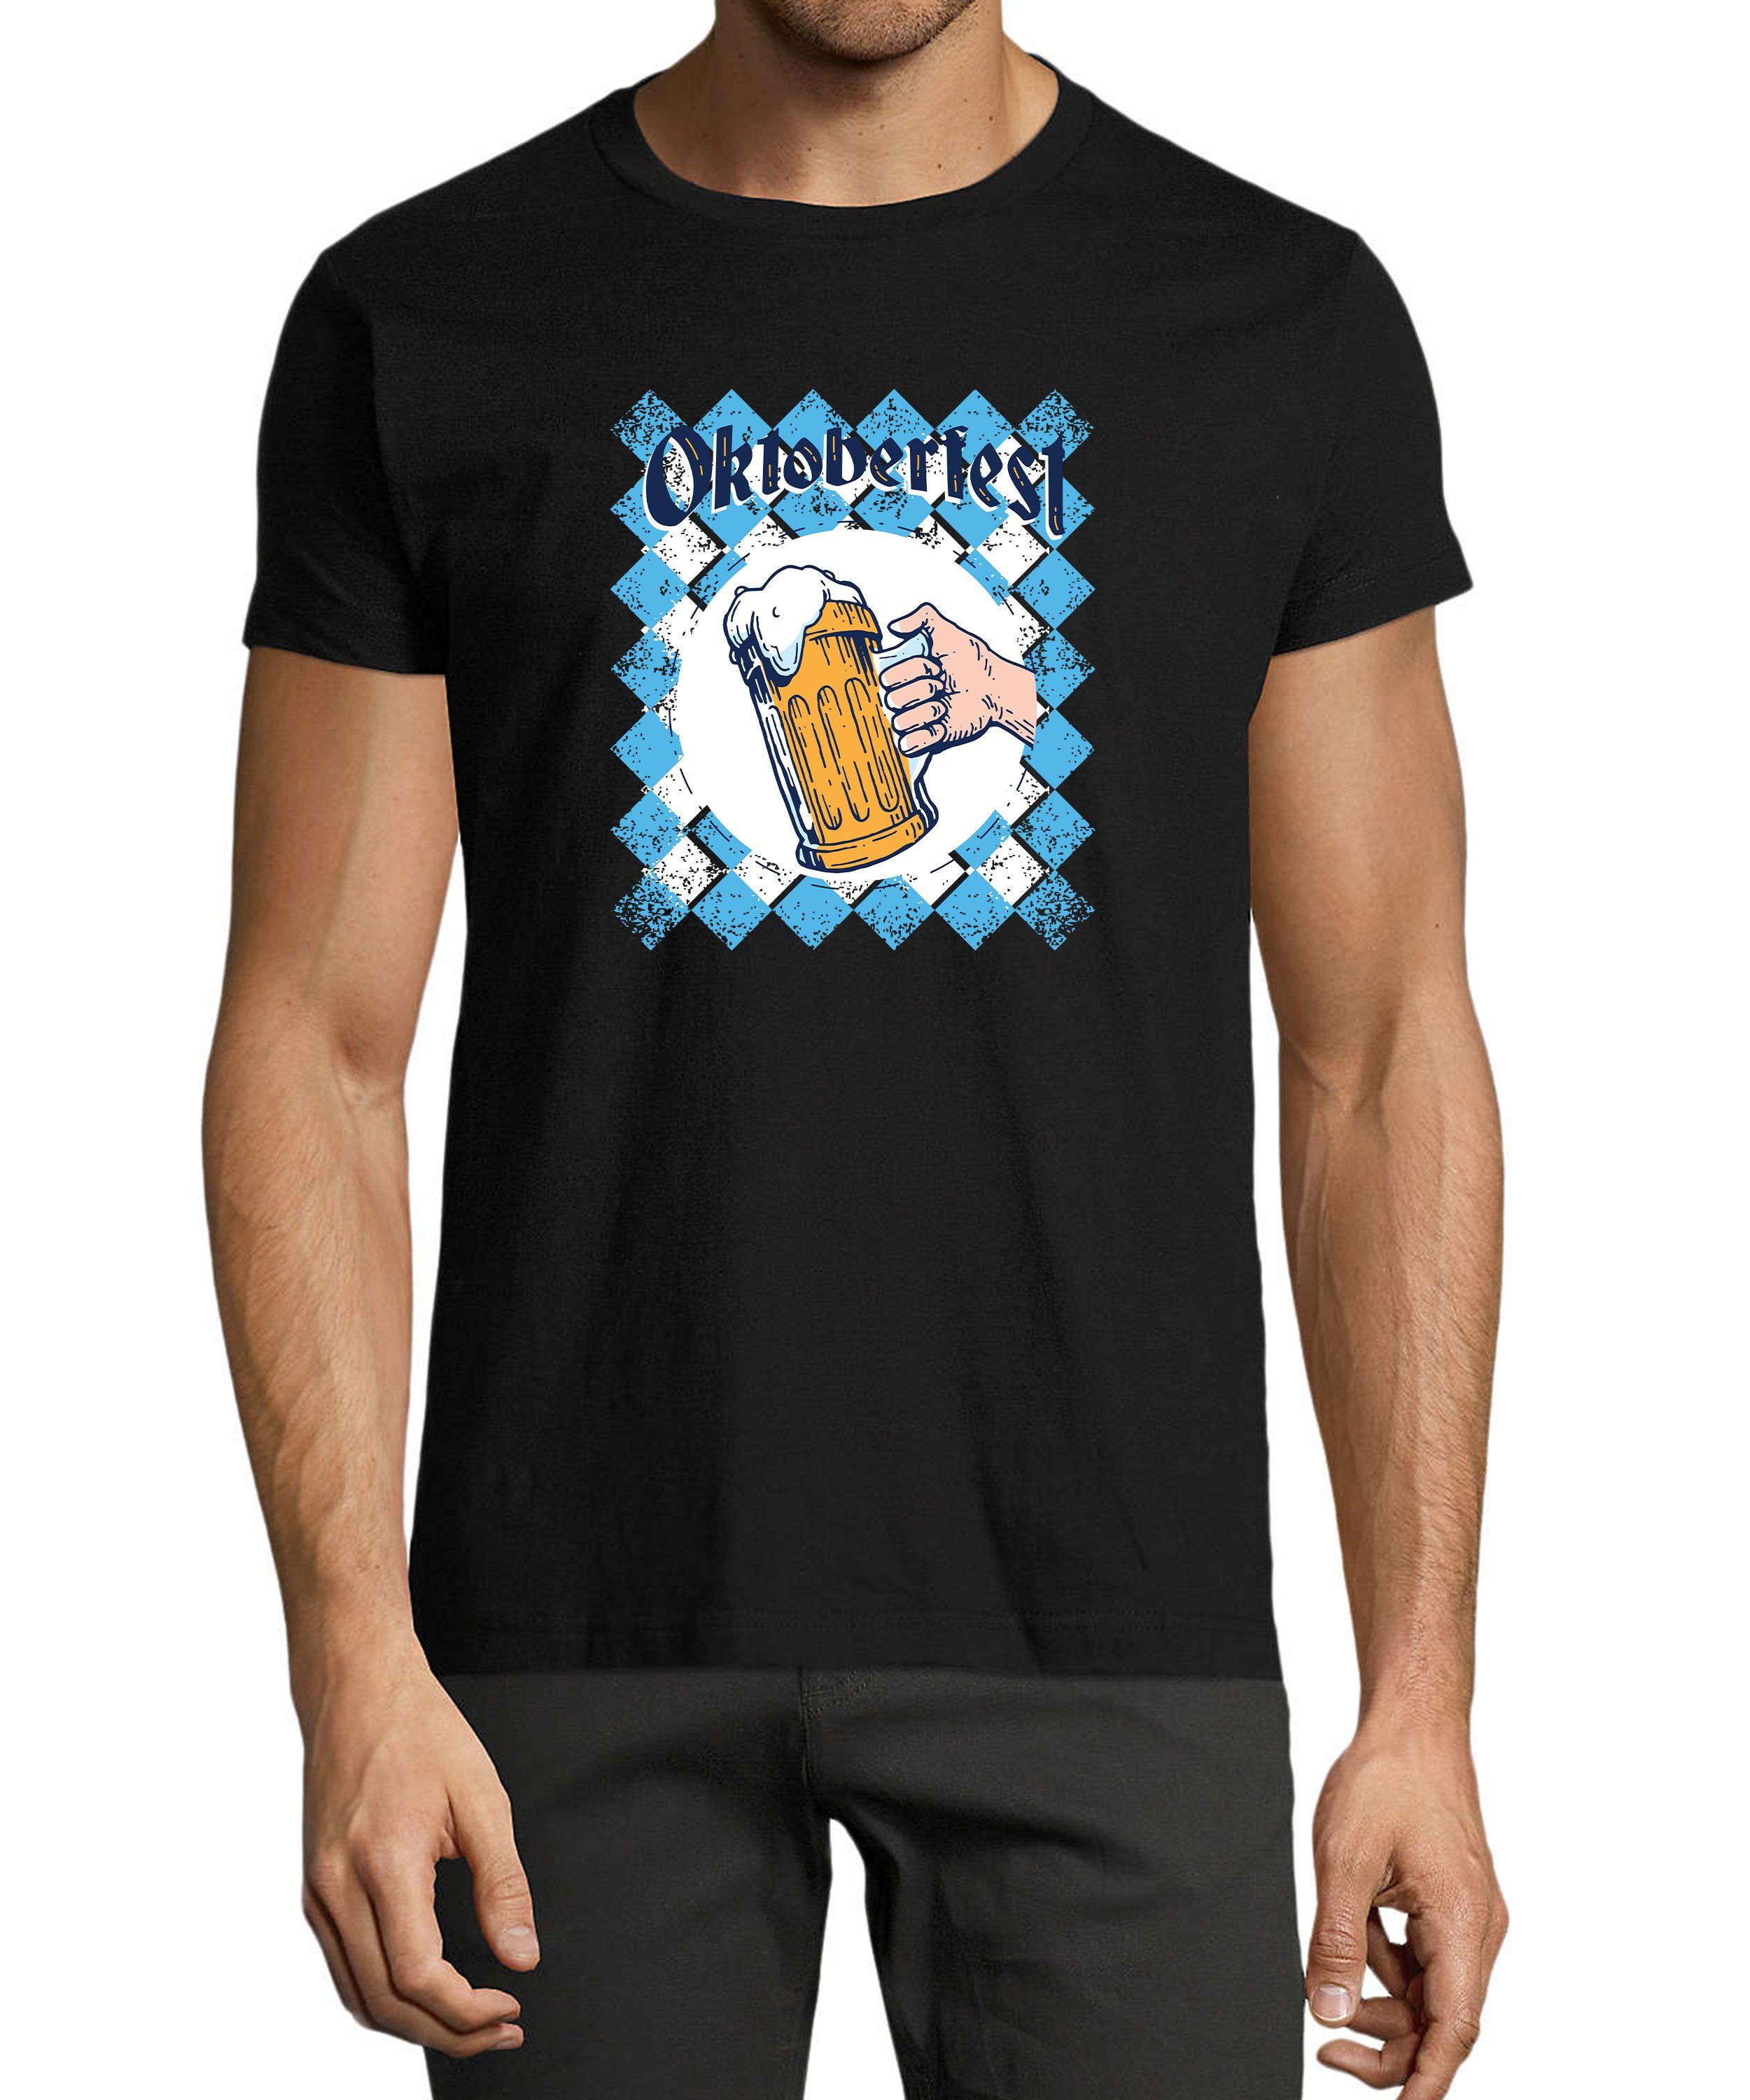 MyDesign24 T-Shirt Herren Regular i319 schwarz Oktoberfest T-Shirt Aufdruck Shirt Fit, Baumwollshirt - Trinkshirt mit Bierglas Print